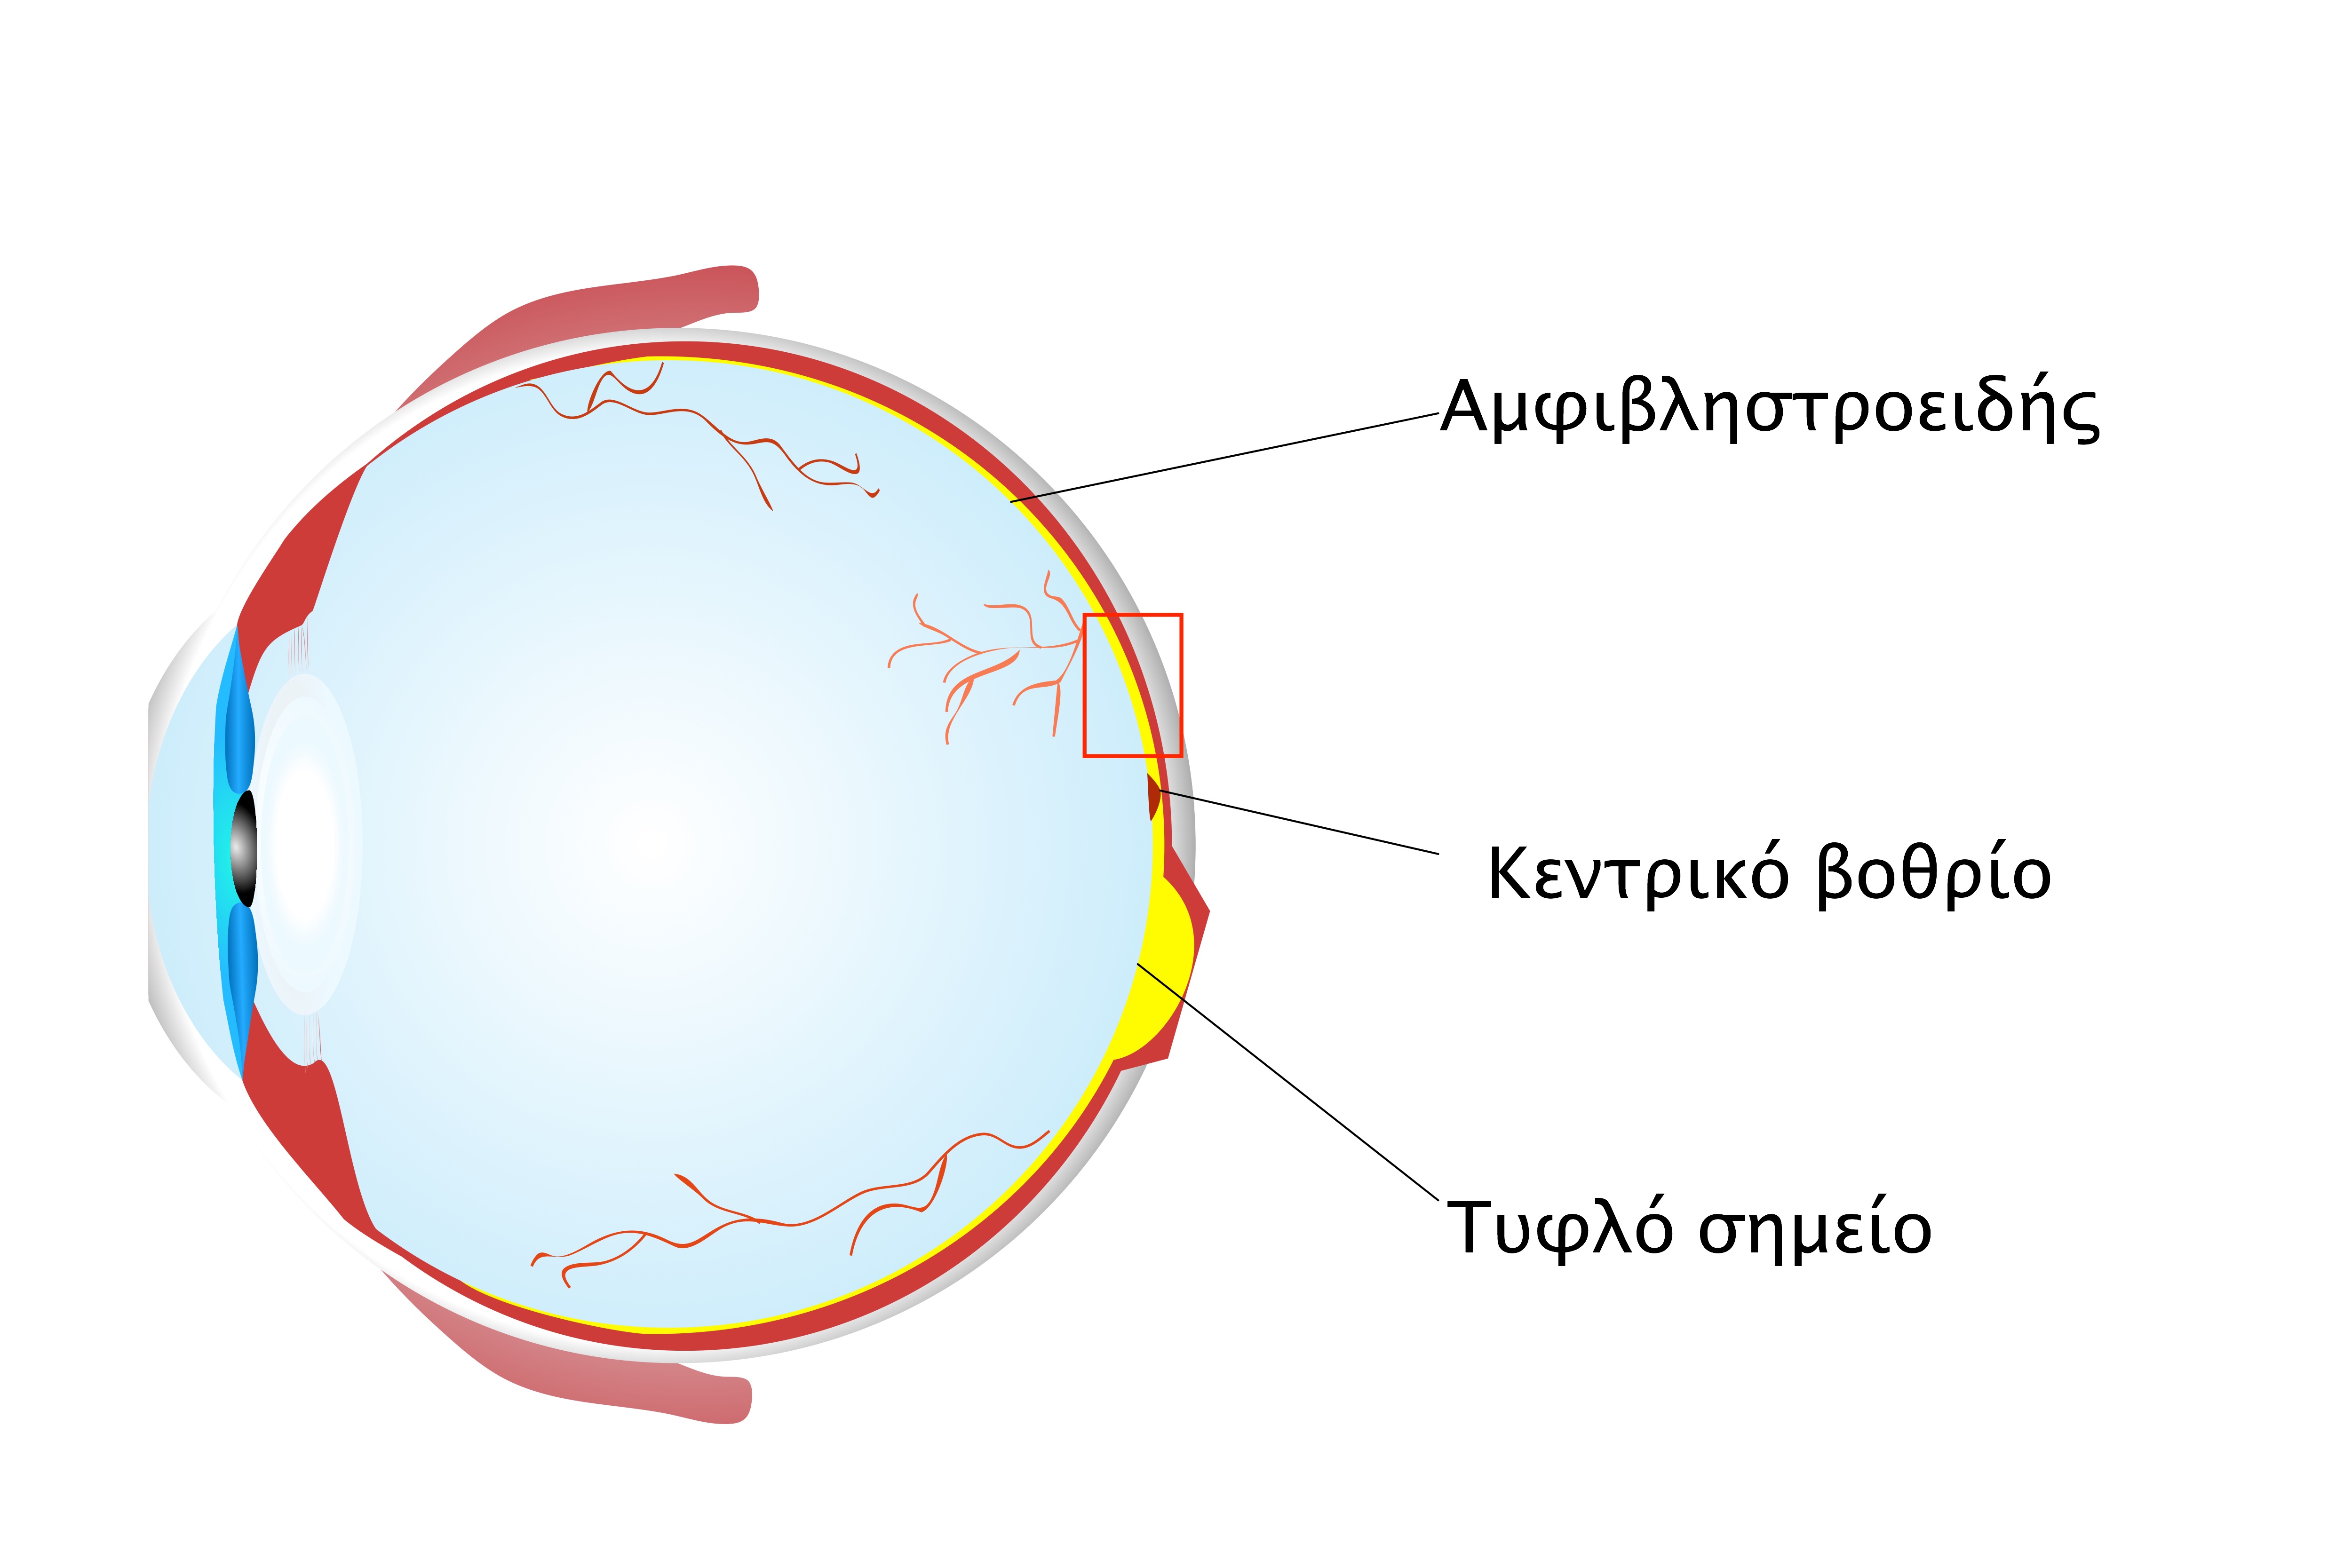 5.2 Δοµή του οφθαλµού (Εικόνα 5.2) Ο οφθαλμός λόγω της εξειδικευμένης δομής του έχει την ικανότητα μετατροπής του οπτικού σήματος σε ηλεκτρικό ώστε να μεταφερθεί προς το κεντρικό νευρικό σύστημα.